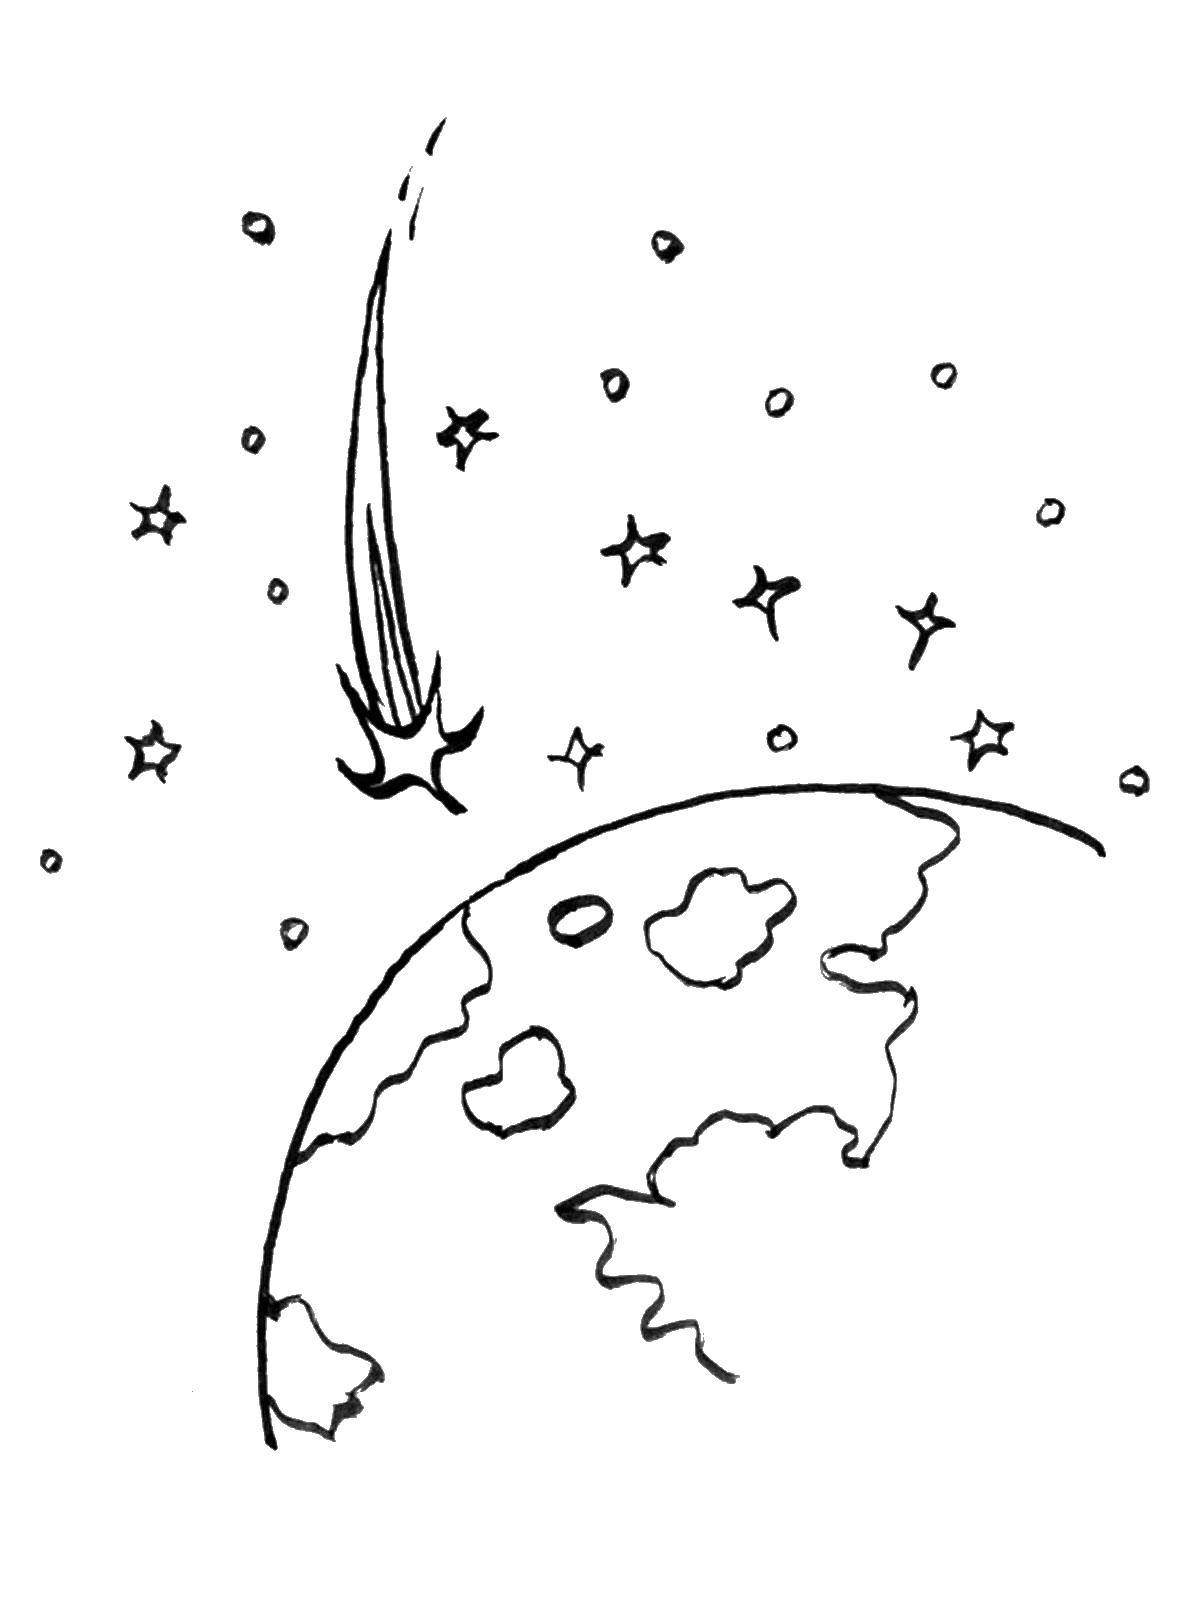 Название: Раскраска Комета и земля. Категория: День космонавтики. Теги: космос, планета, ракета, Гагарин, день космонавтики, комета.